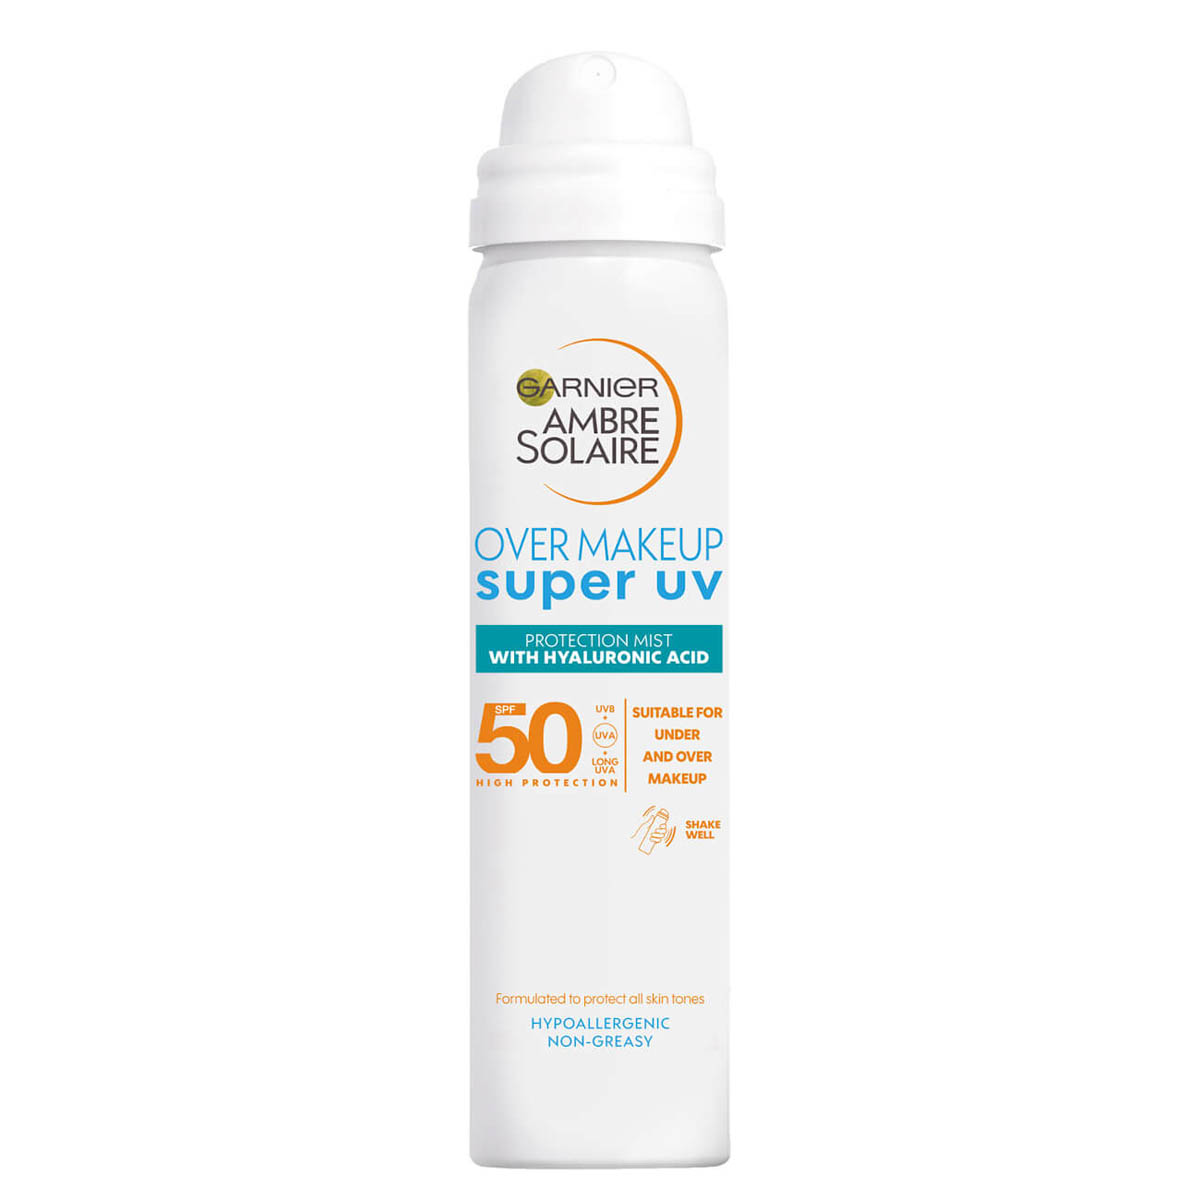 GARNIER AMBRE SOLAIRE Over Makeup Super UV Spray SPF 50 Sonnenschutz Gesicht kaufen bestellen Erfahrungen Empfehlung Review